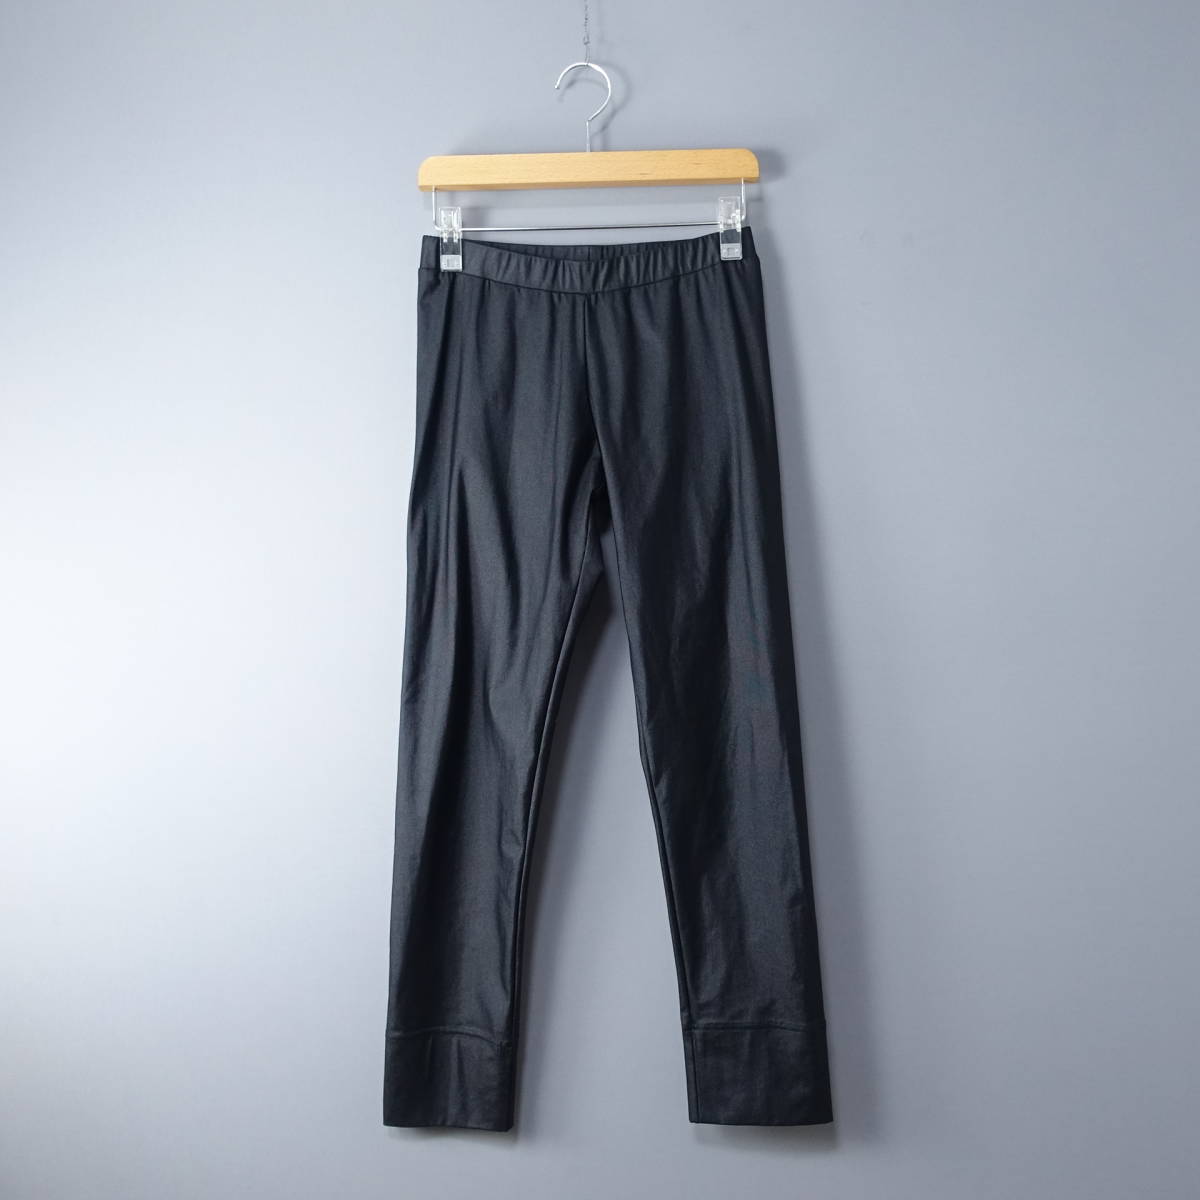  прекрасный товар *SHIZUKA KOMURO/sizka com ro/4298/40/ сделано в Японии / талия резина стрейч брюки / черный чёрный (M~L соответствует )